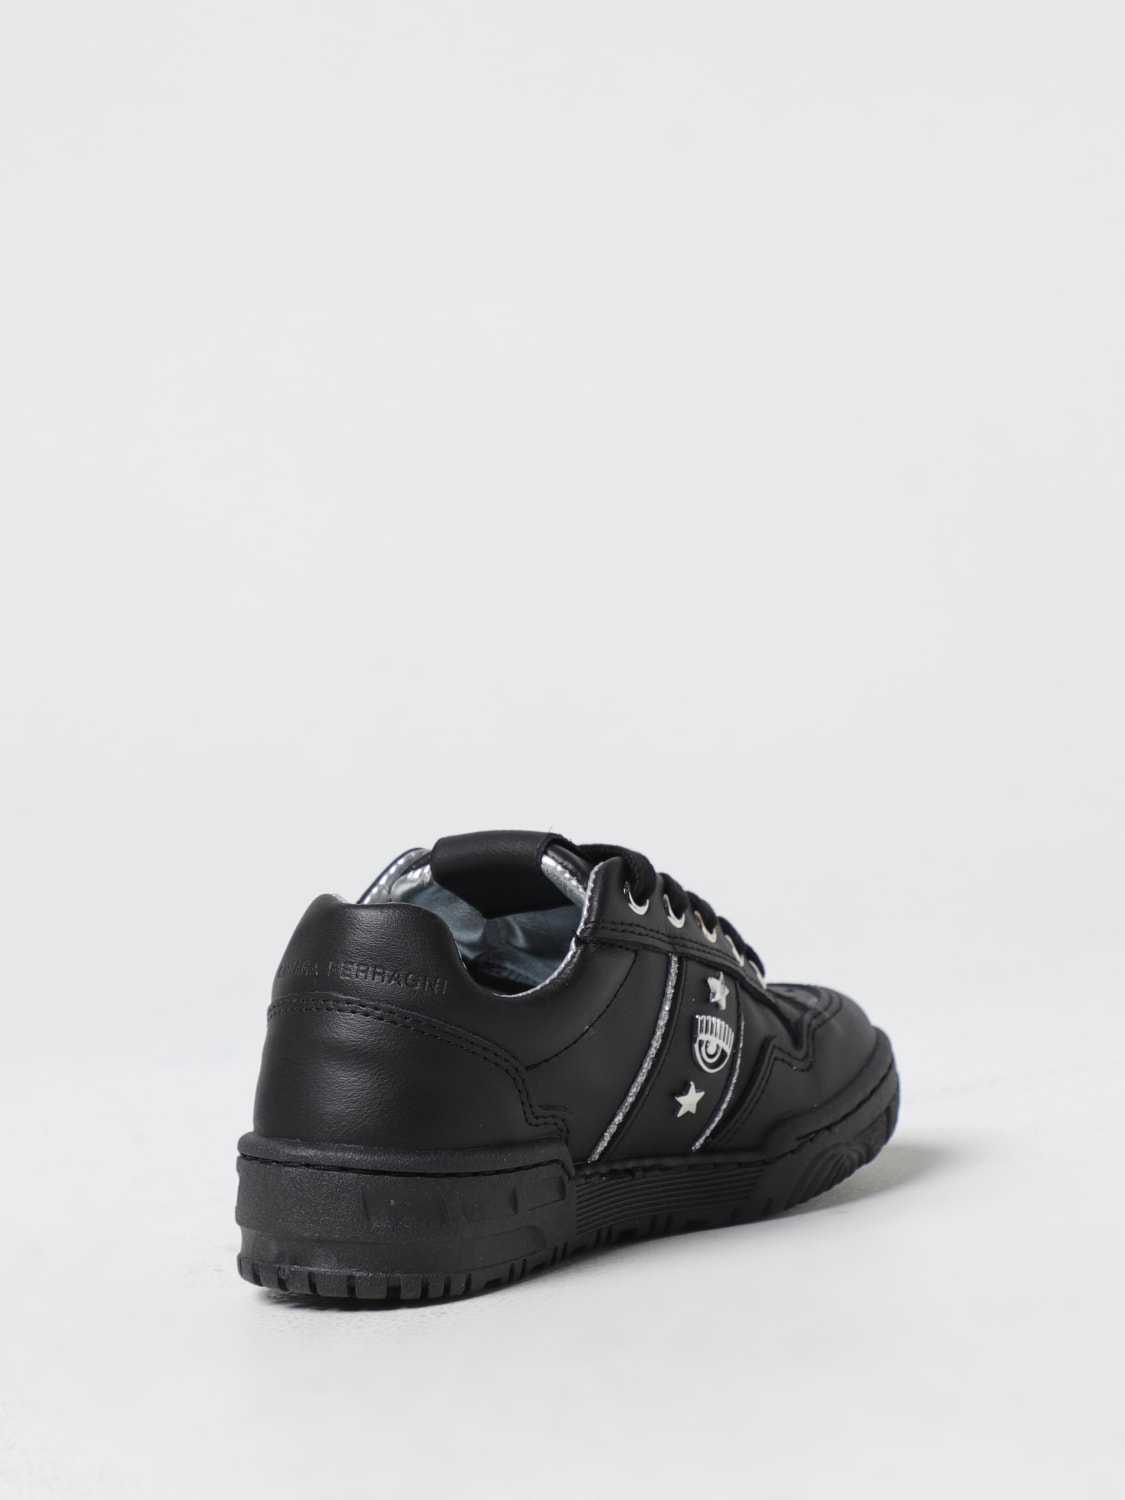 Chiara Ferragni - White and Black Leather Sneakers